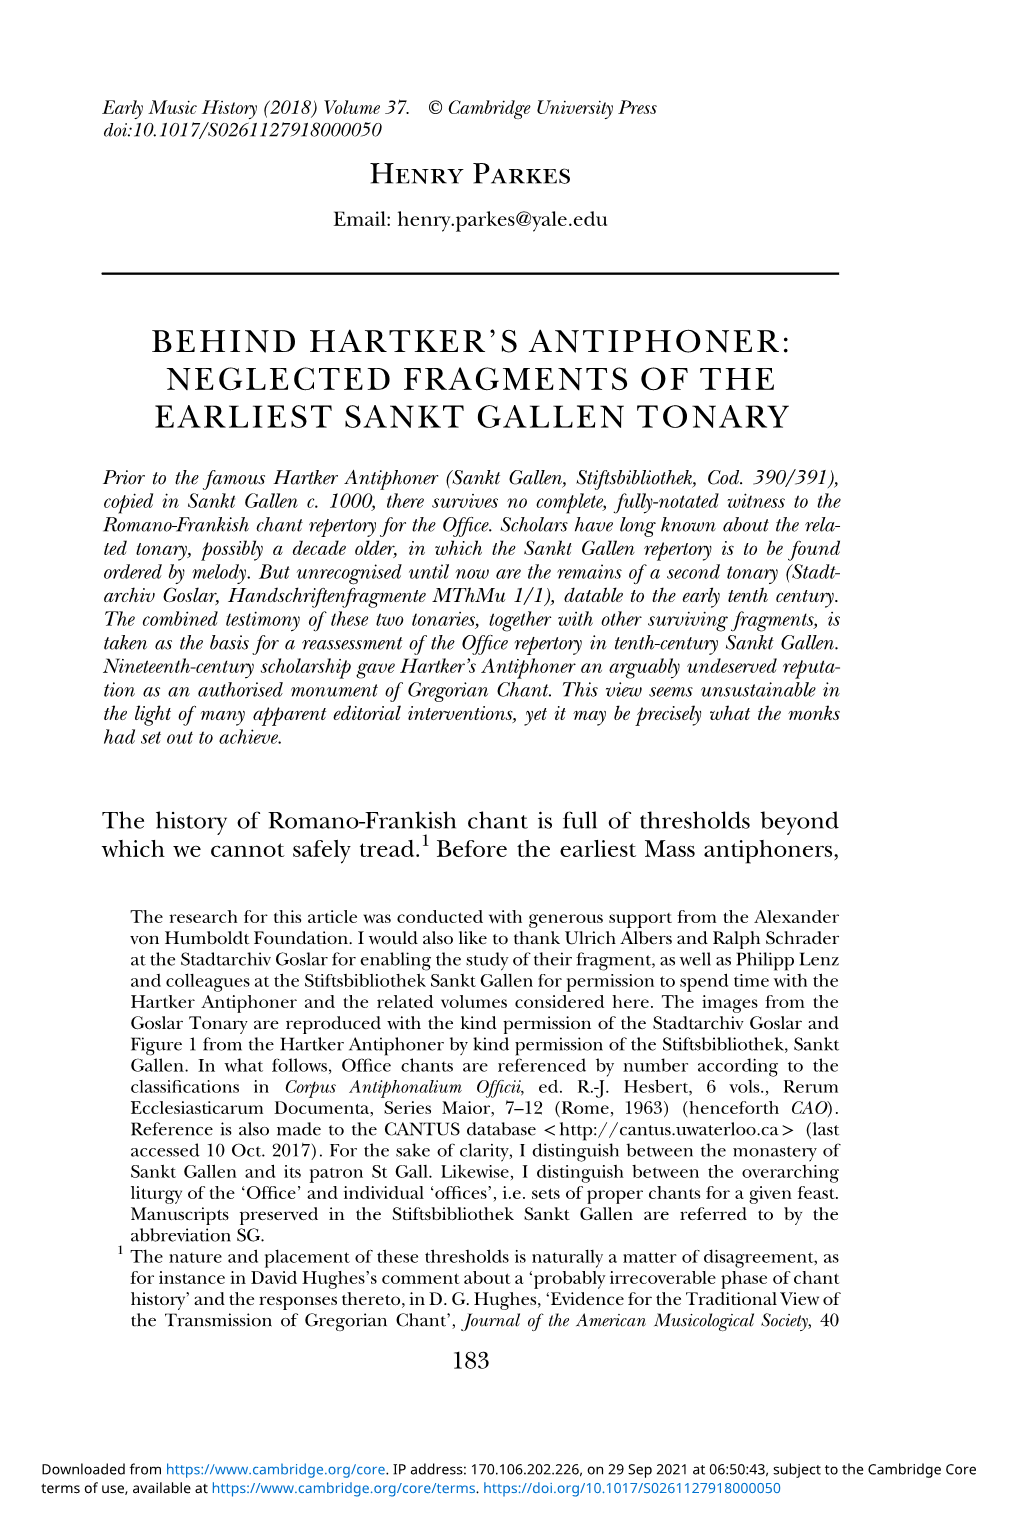 Behind Hartker's Antiphoner: Neglected Fragments of the Earliest Sankt Gallen Tonary